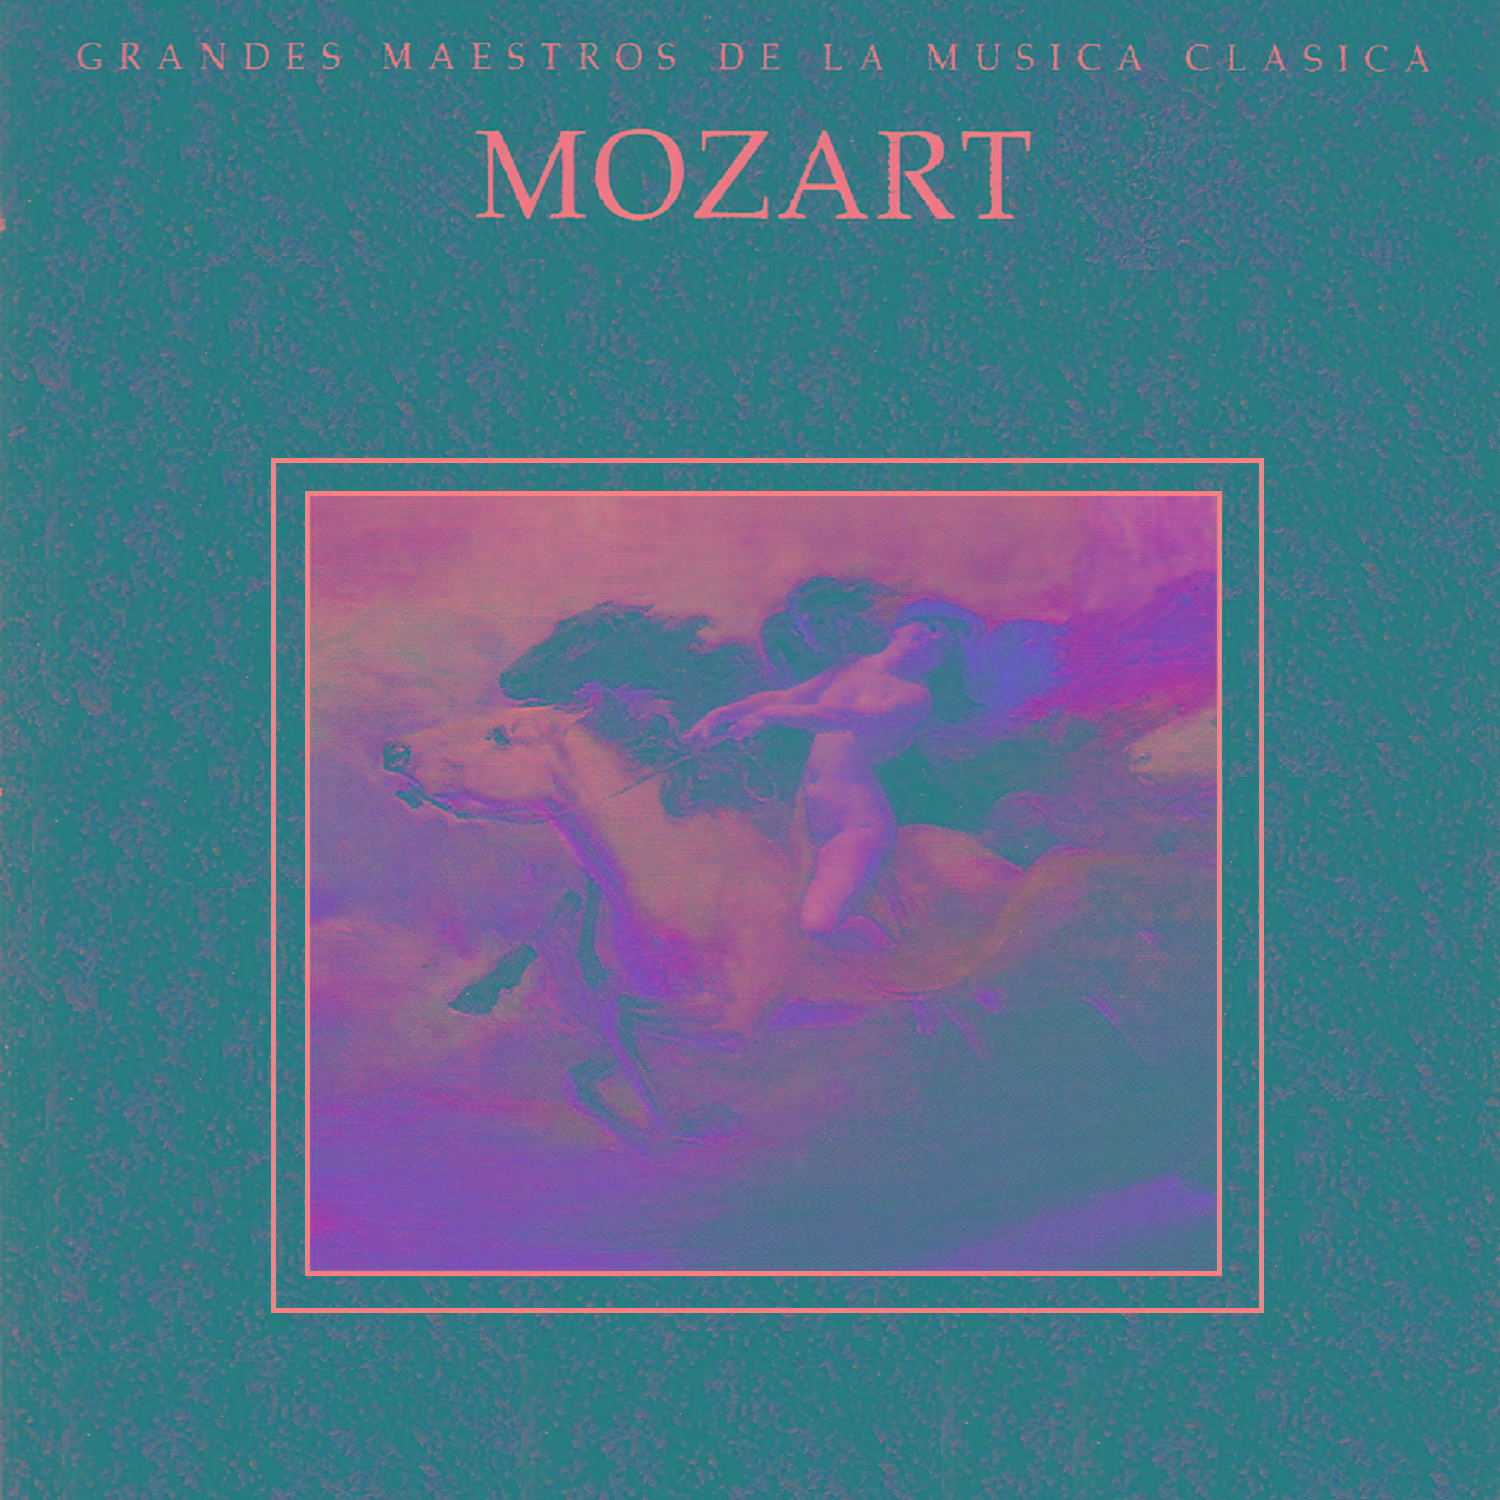 Grandes Maestros de la Musica Clasica - Mozart